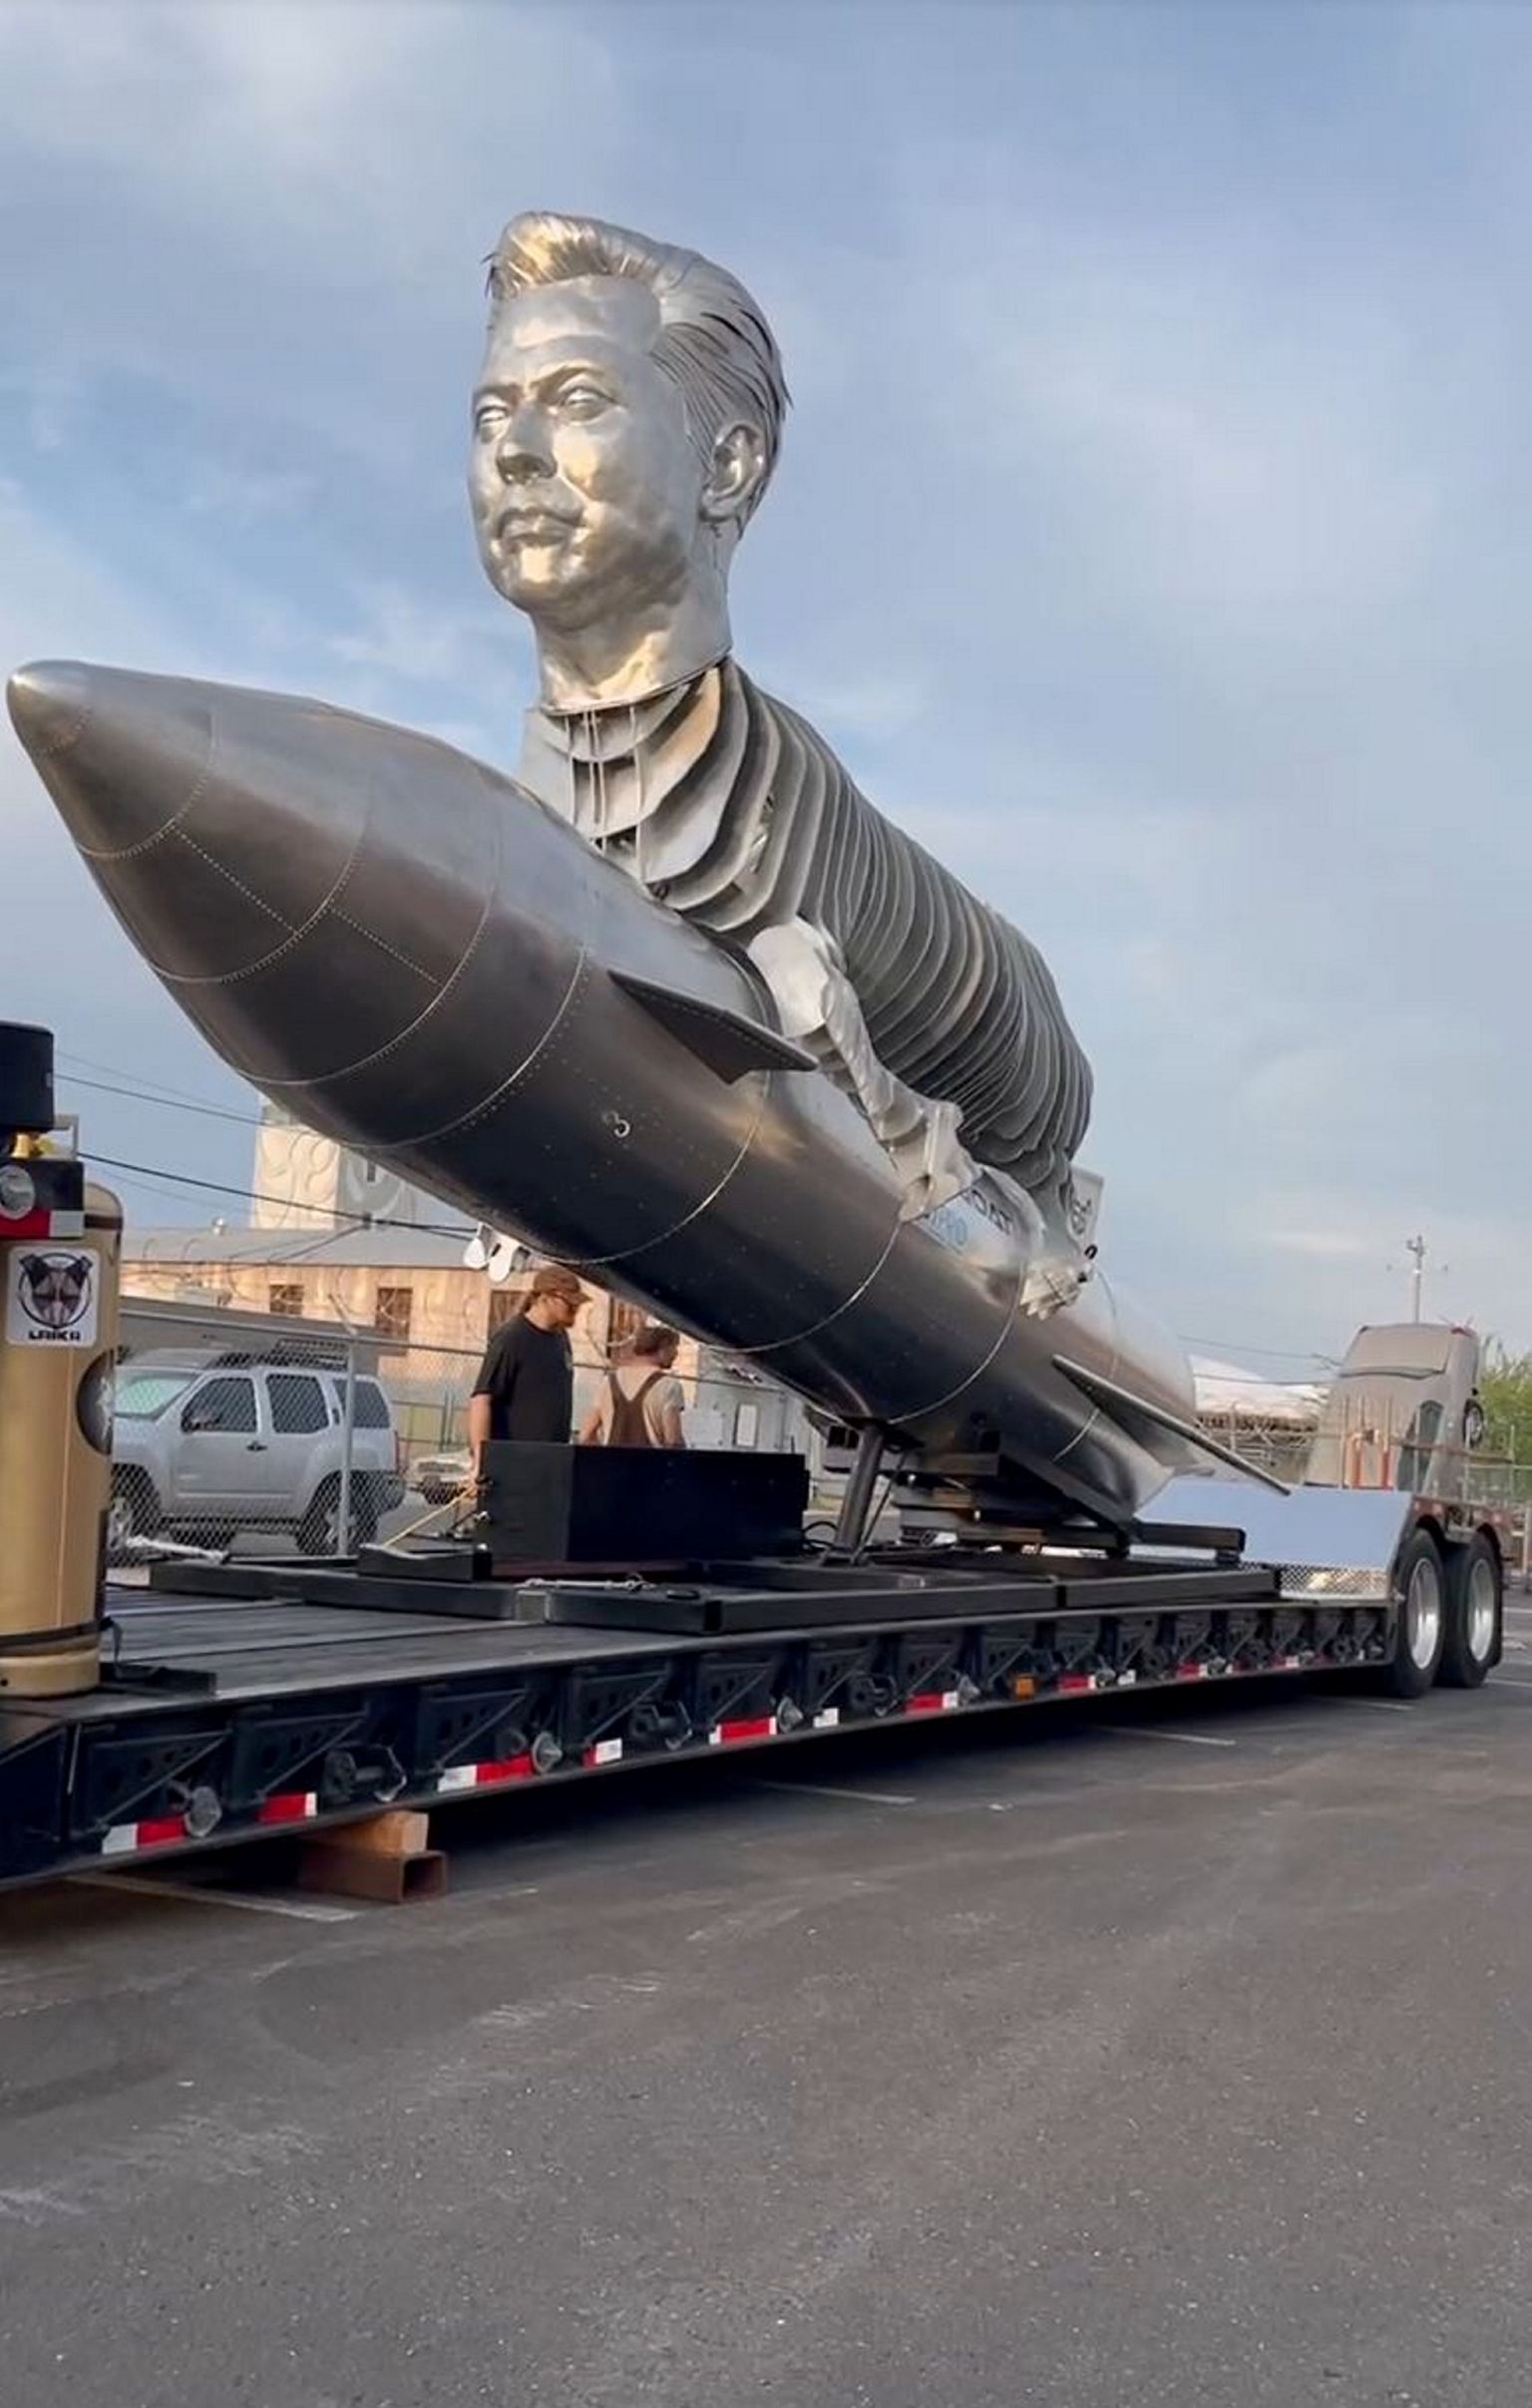 Pildil fännide poolt Elon Muski auks kujundatud monument.